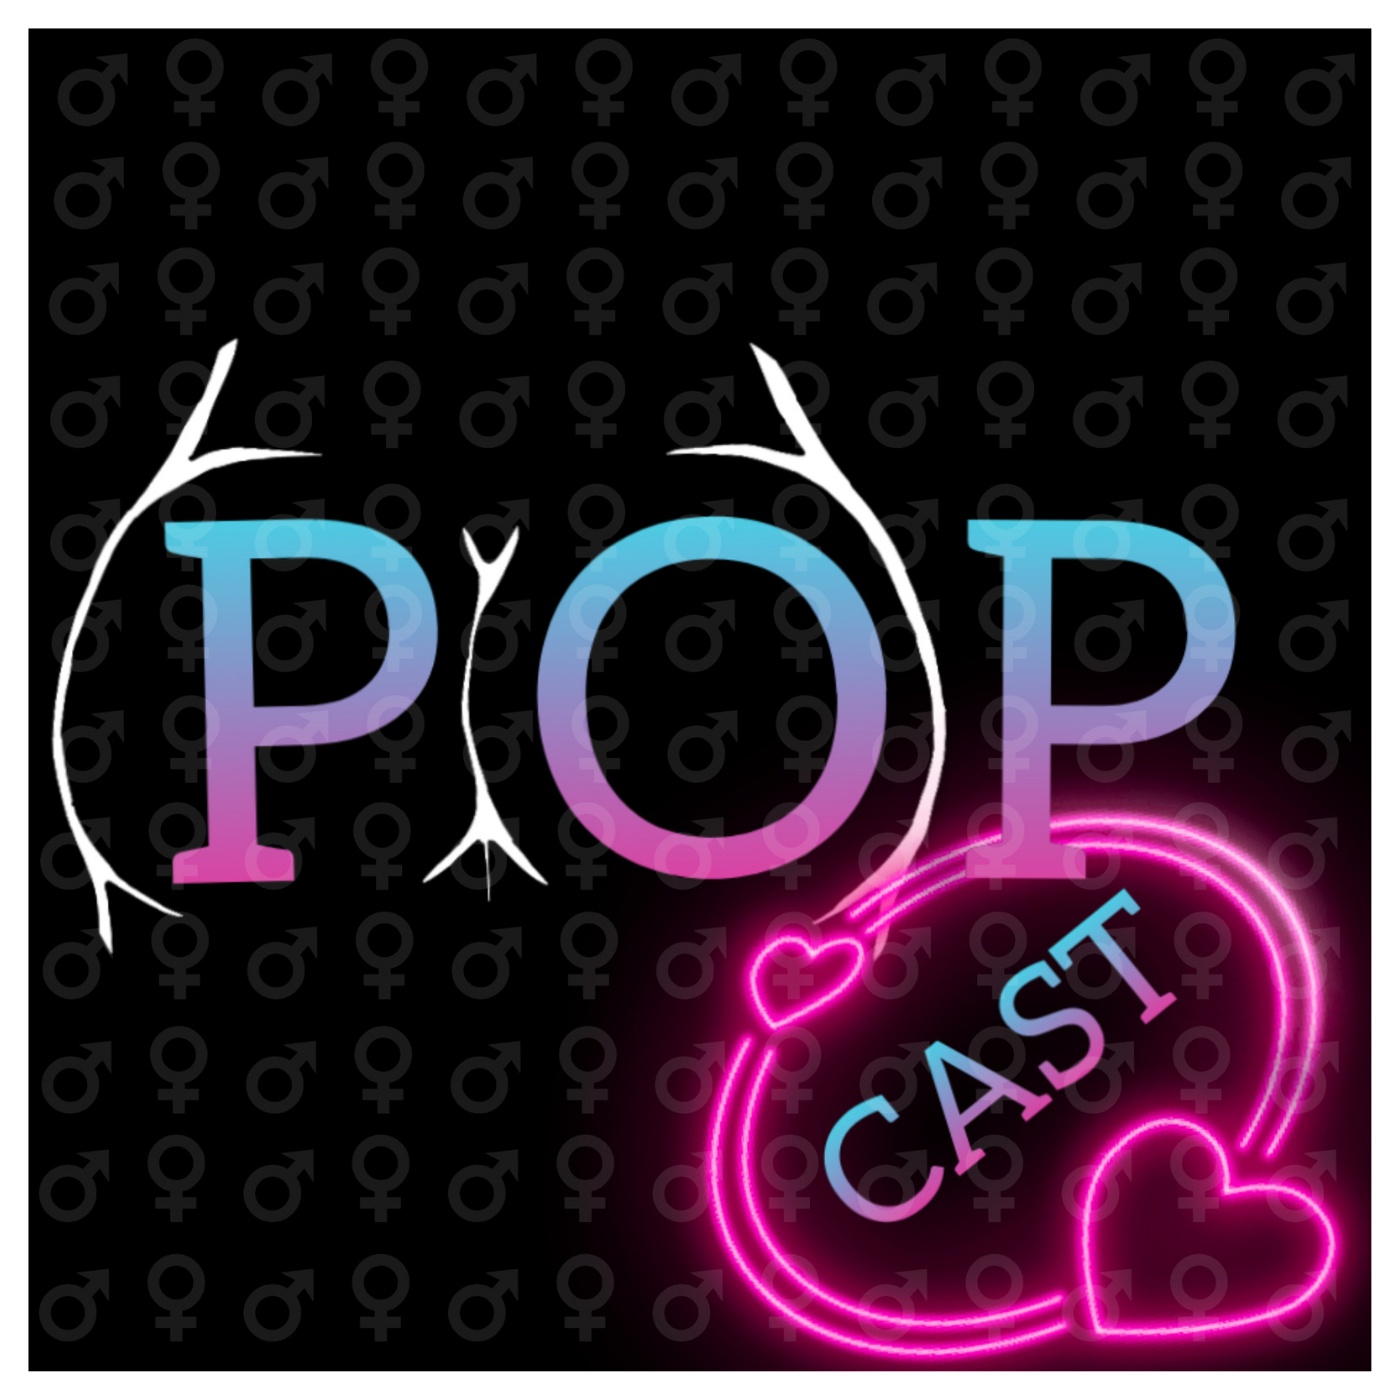 Popp.cast Teaser